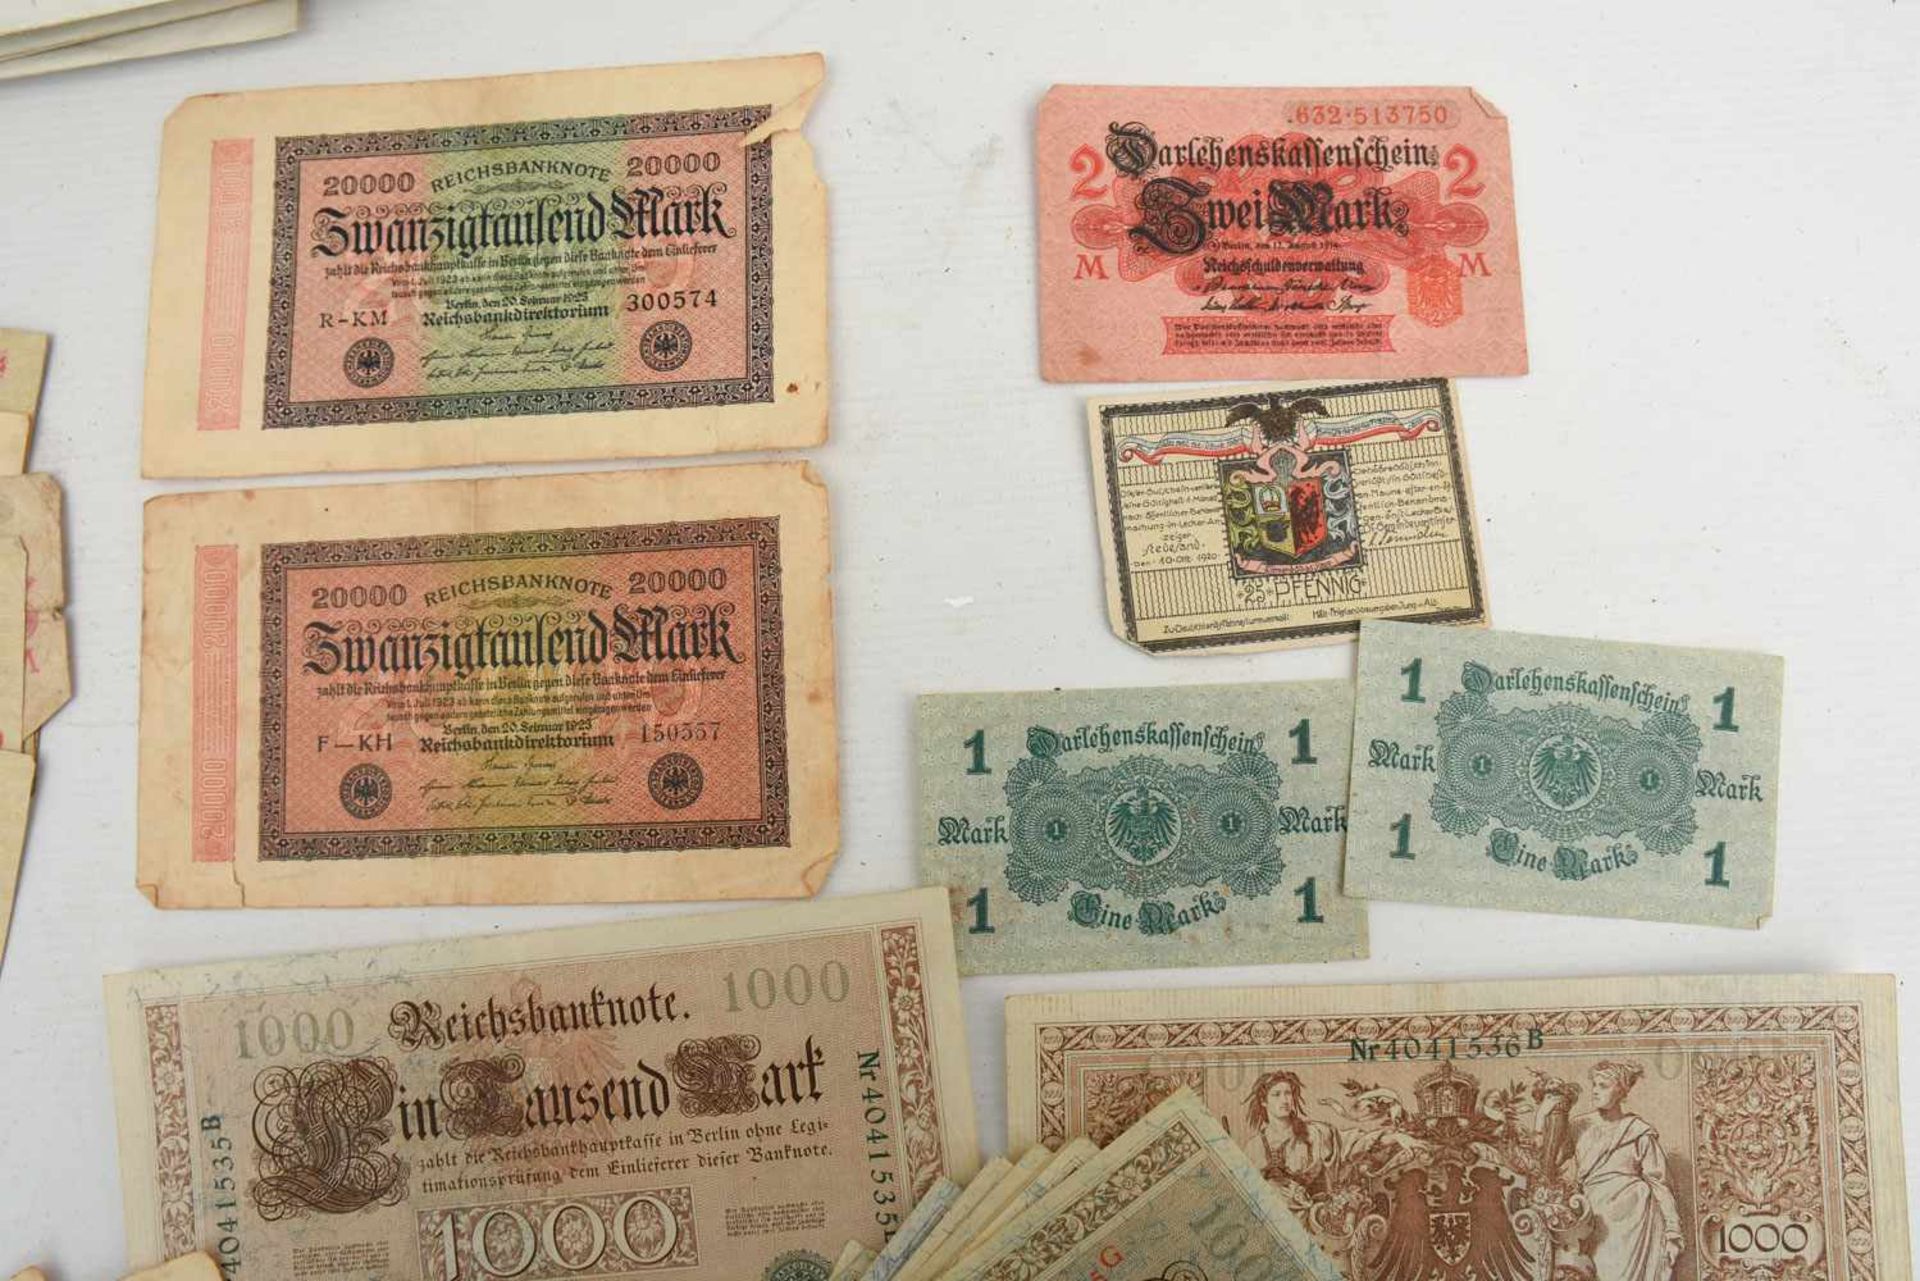 HISTORISCHE GELDSCHEINE/INFLATIONSGELD, Deutsches Reich/Württemberg 1910-1923 Verschiedene - Image 3 of 5